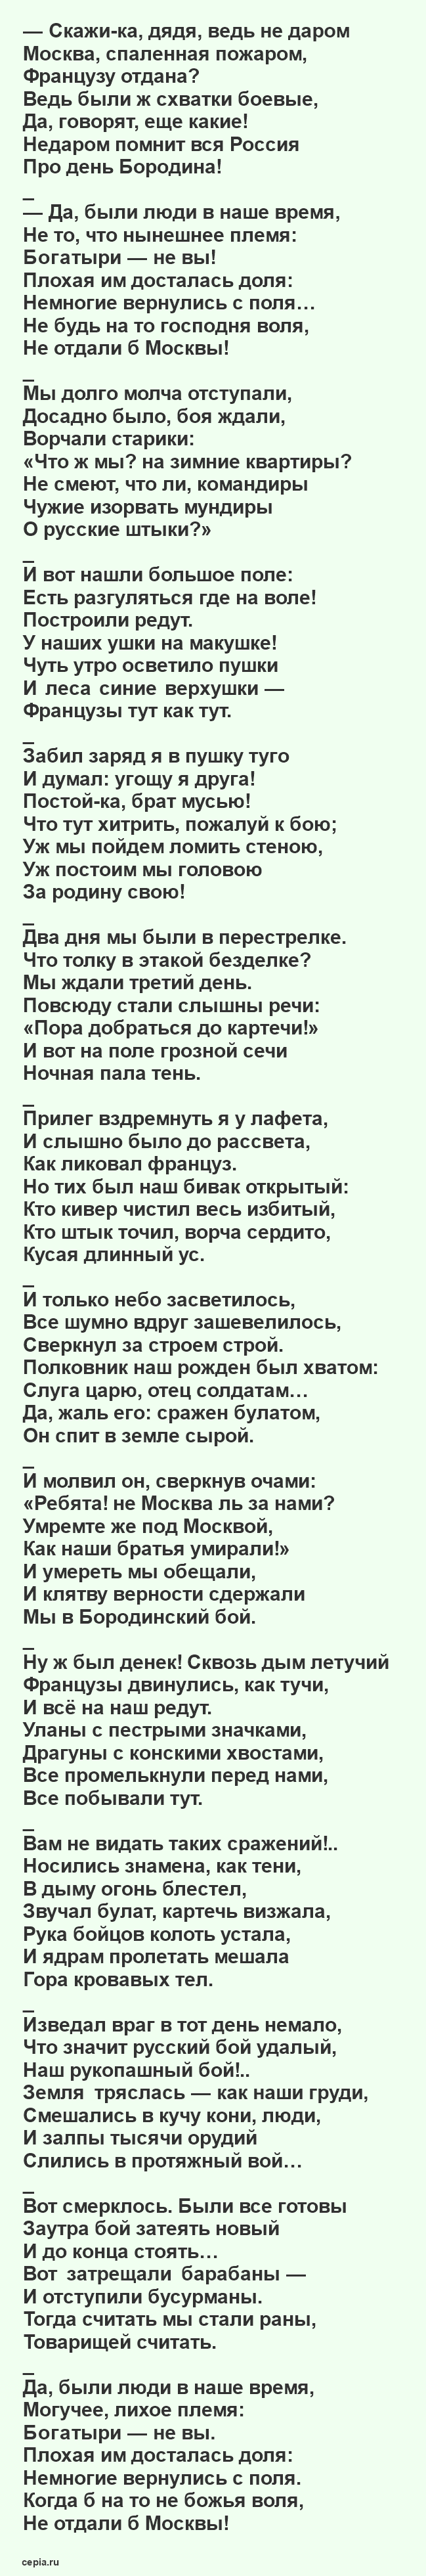 Лермонтов Михаил - Бородино, полный текст стихотворения